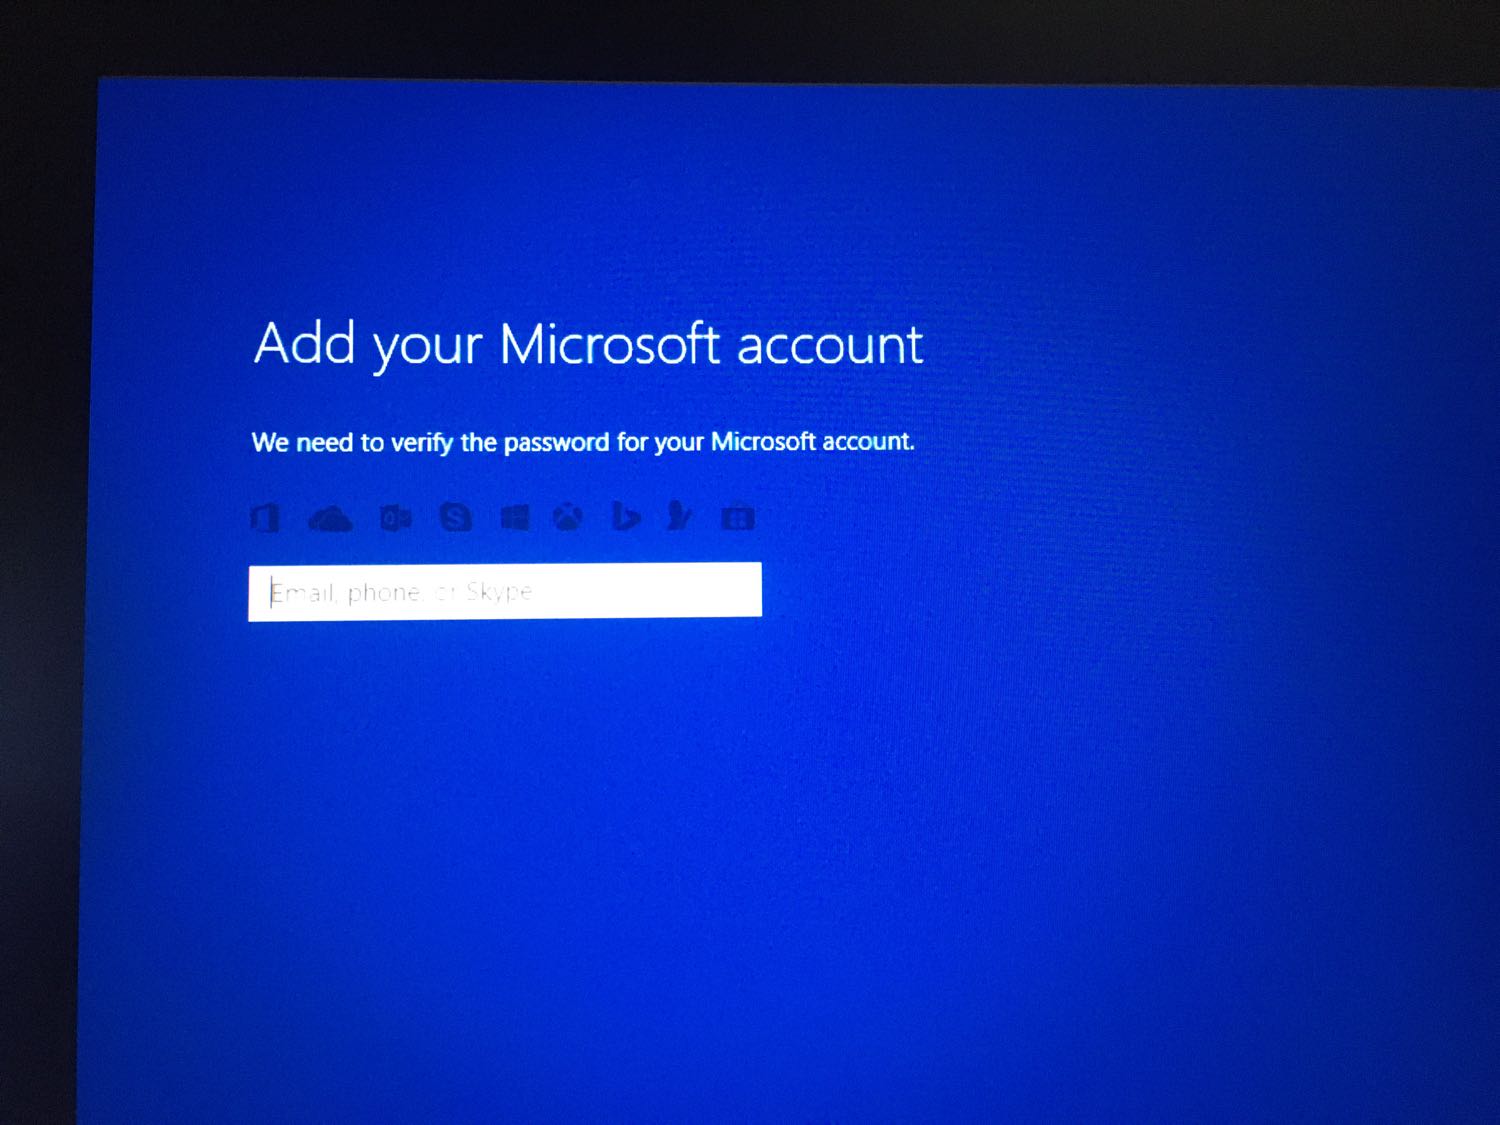 เข้าคอมไม่ได้ติด Add Your Microsoft Account แก้ยังไงดี?? - Pantip